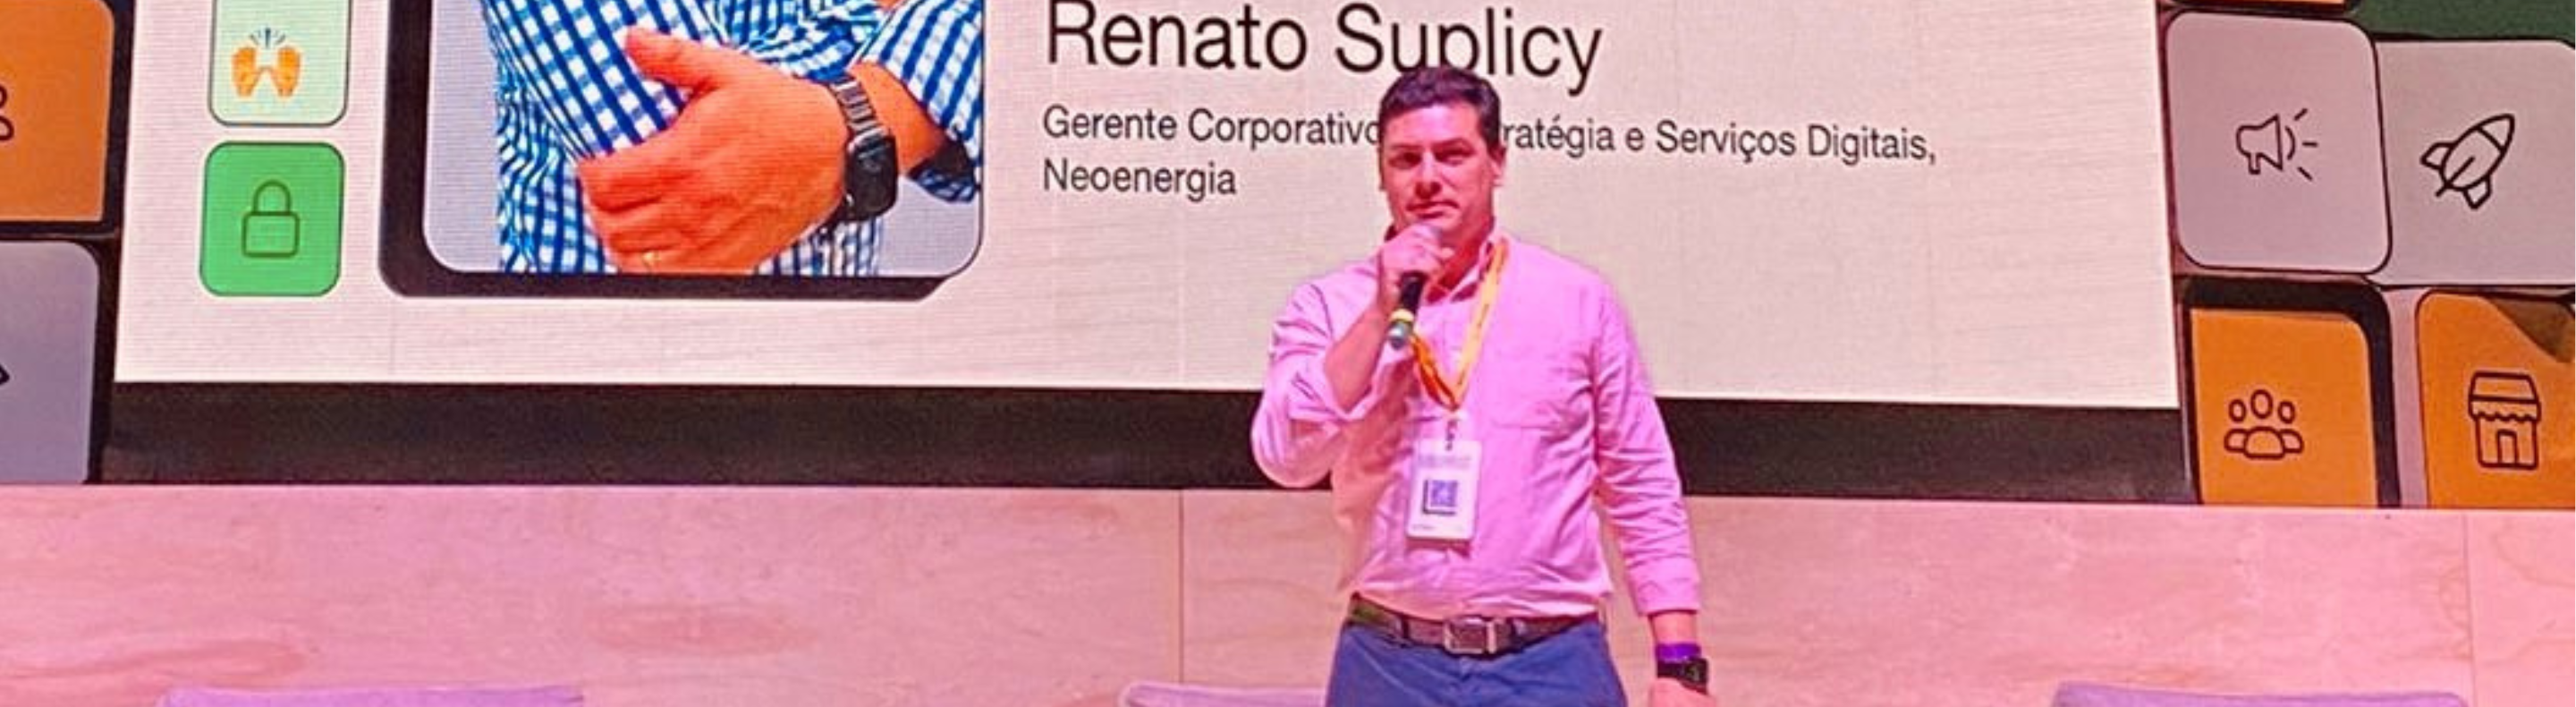 Imagem mostra Renato Suplicy, gerente corporativo de Estratégia e Serviços Digitais, vestindo camisa rosa e segurando microfone durante palestra